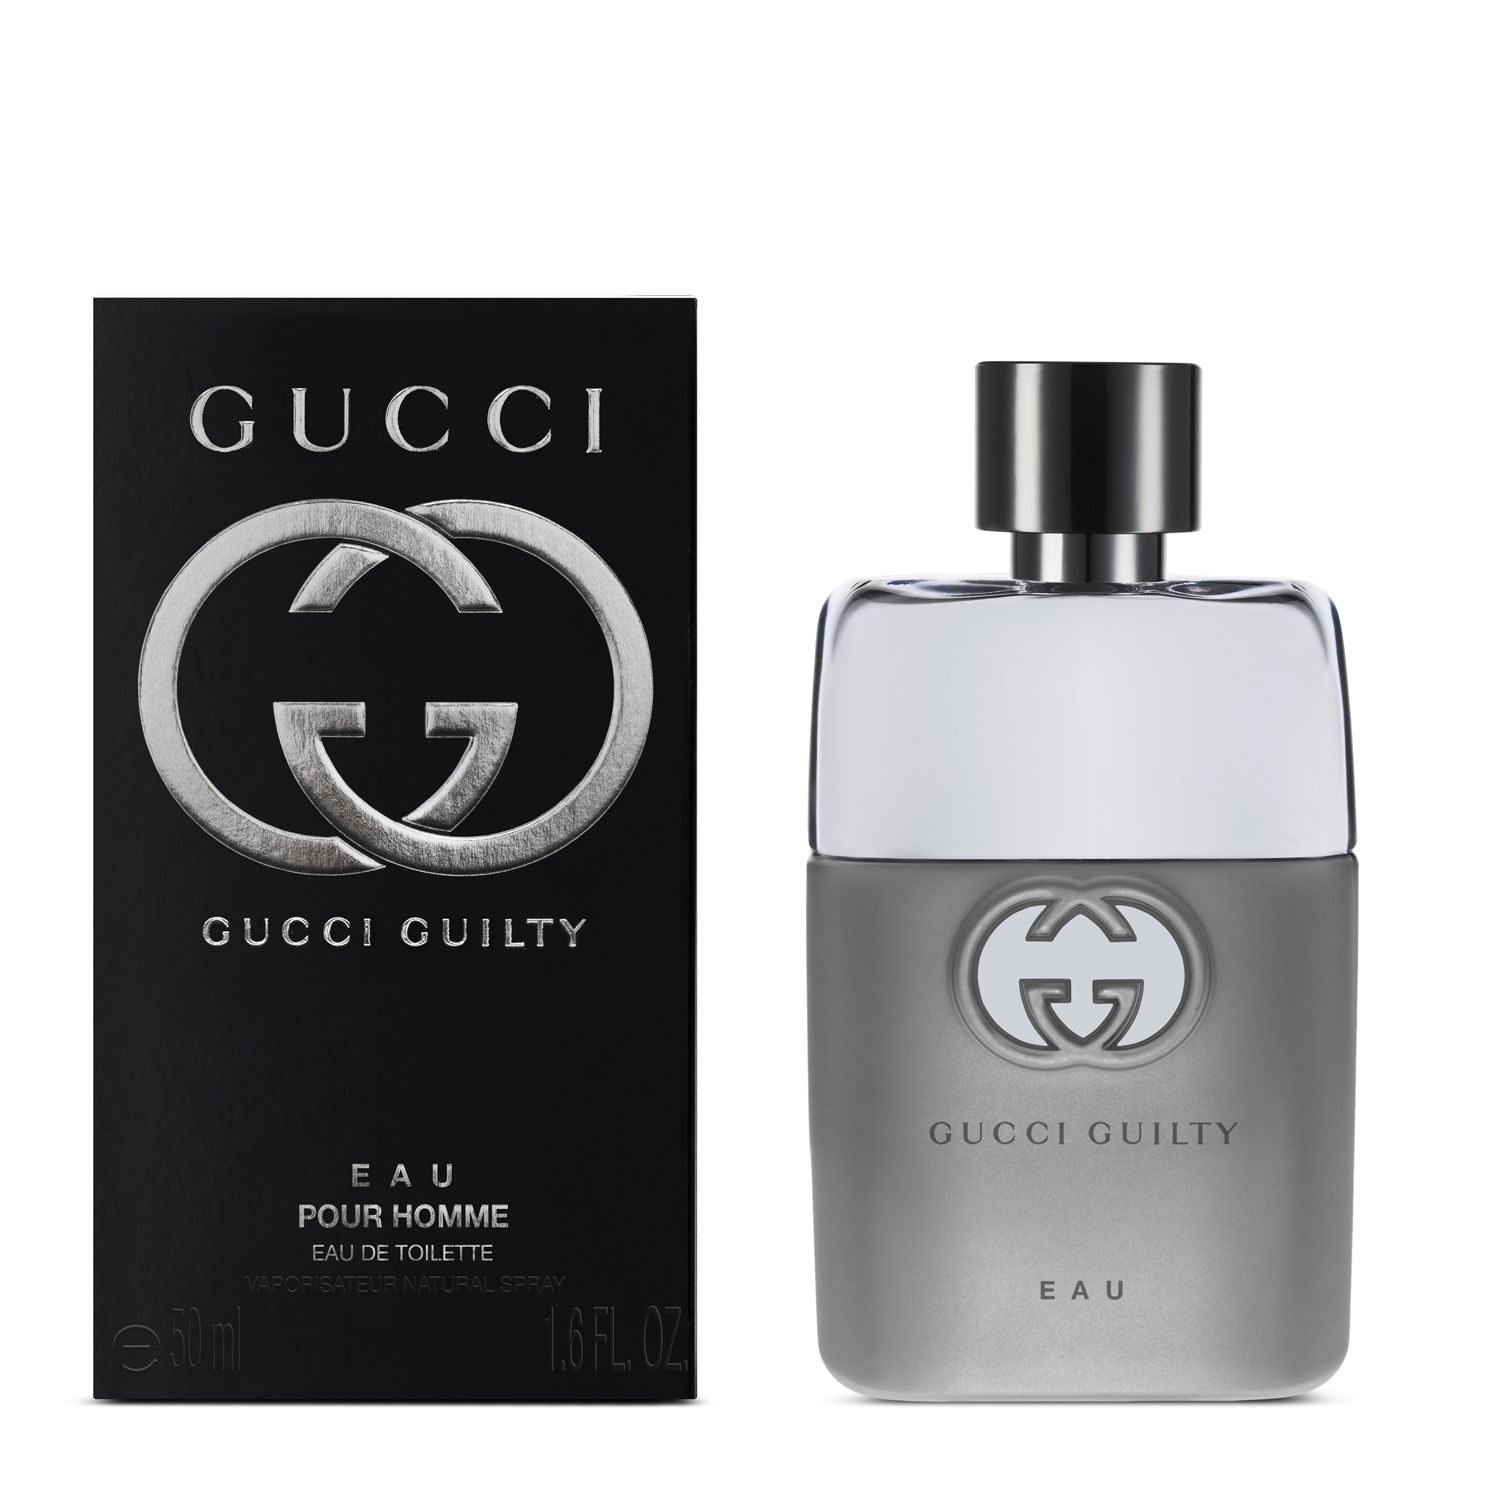 Pour homme для мужчин. Gucci guilty pour femme EDT 90ml. Мужская туалетная вода Gucci guilty. Духи Gucci guilty pour homme. Gucci guilty pour homme Platinum.